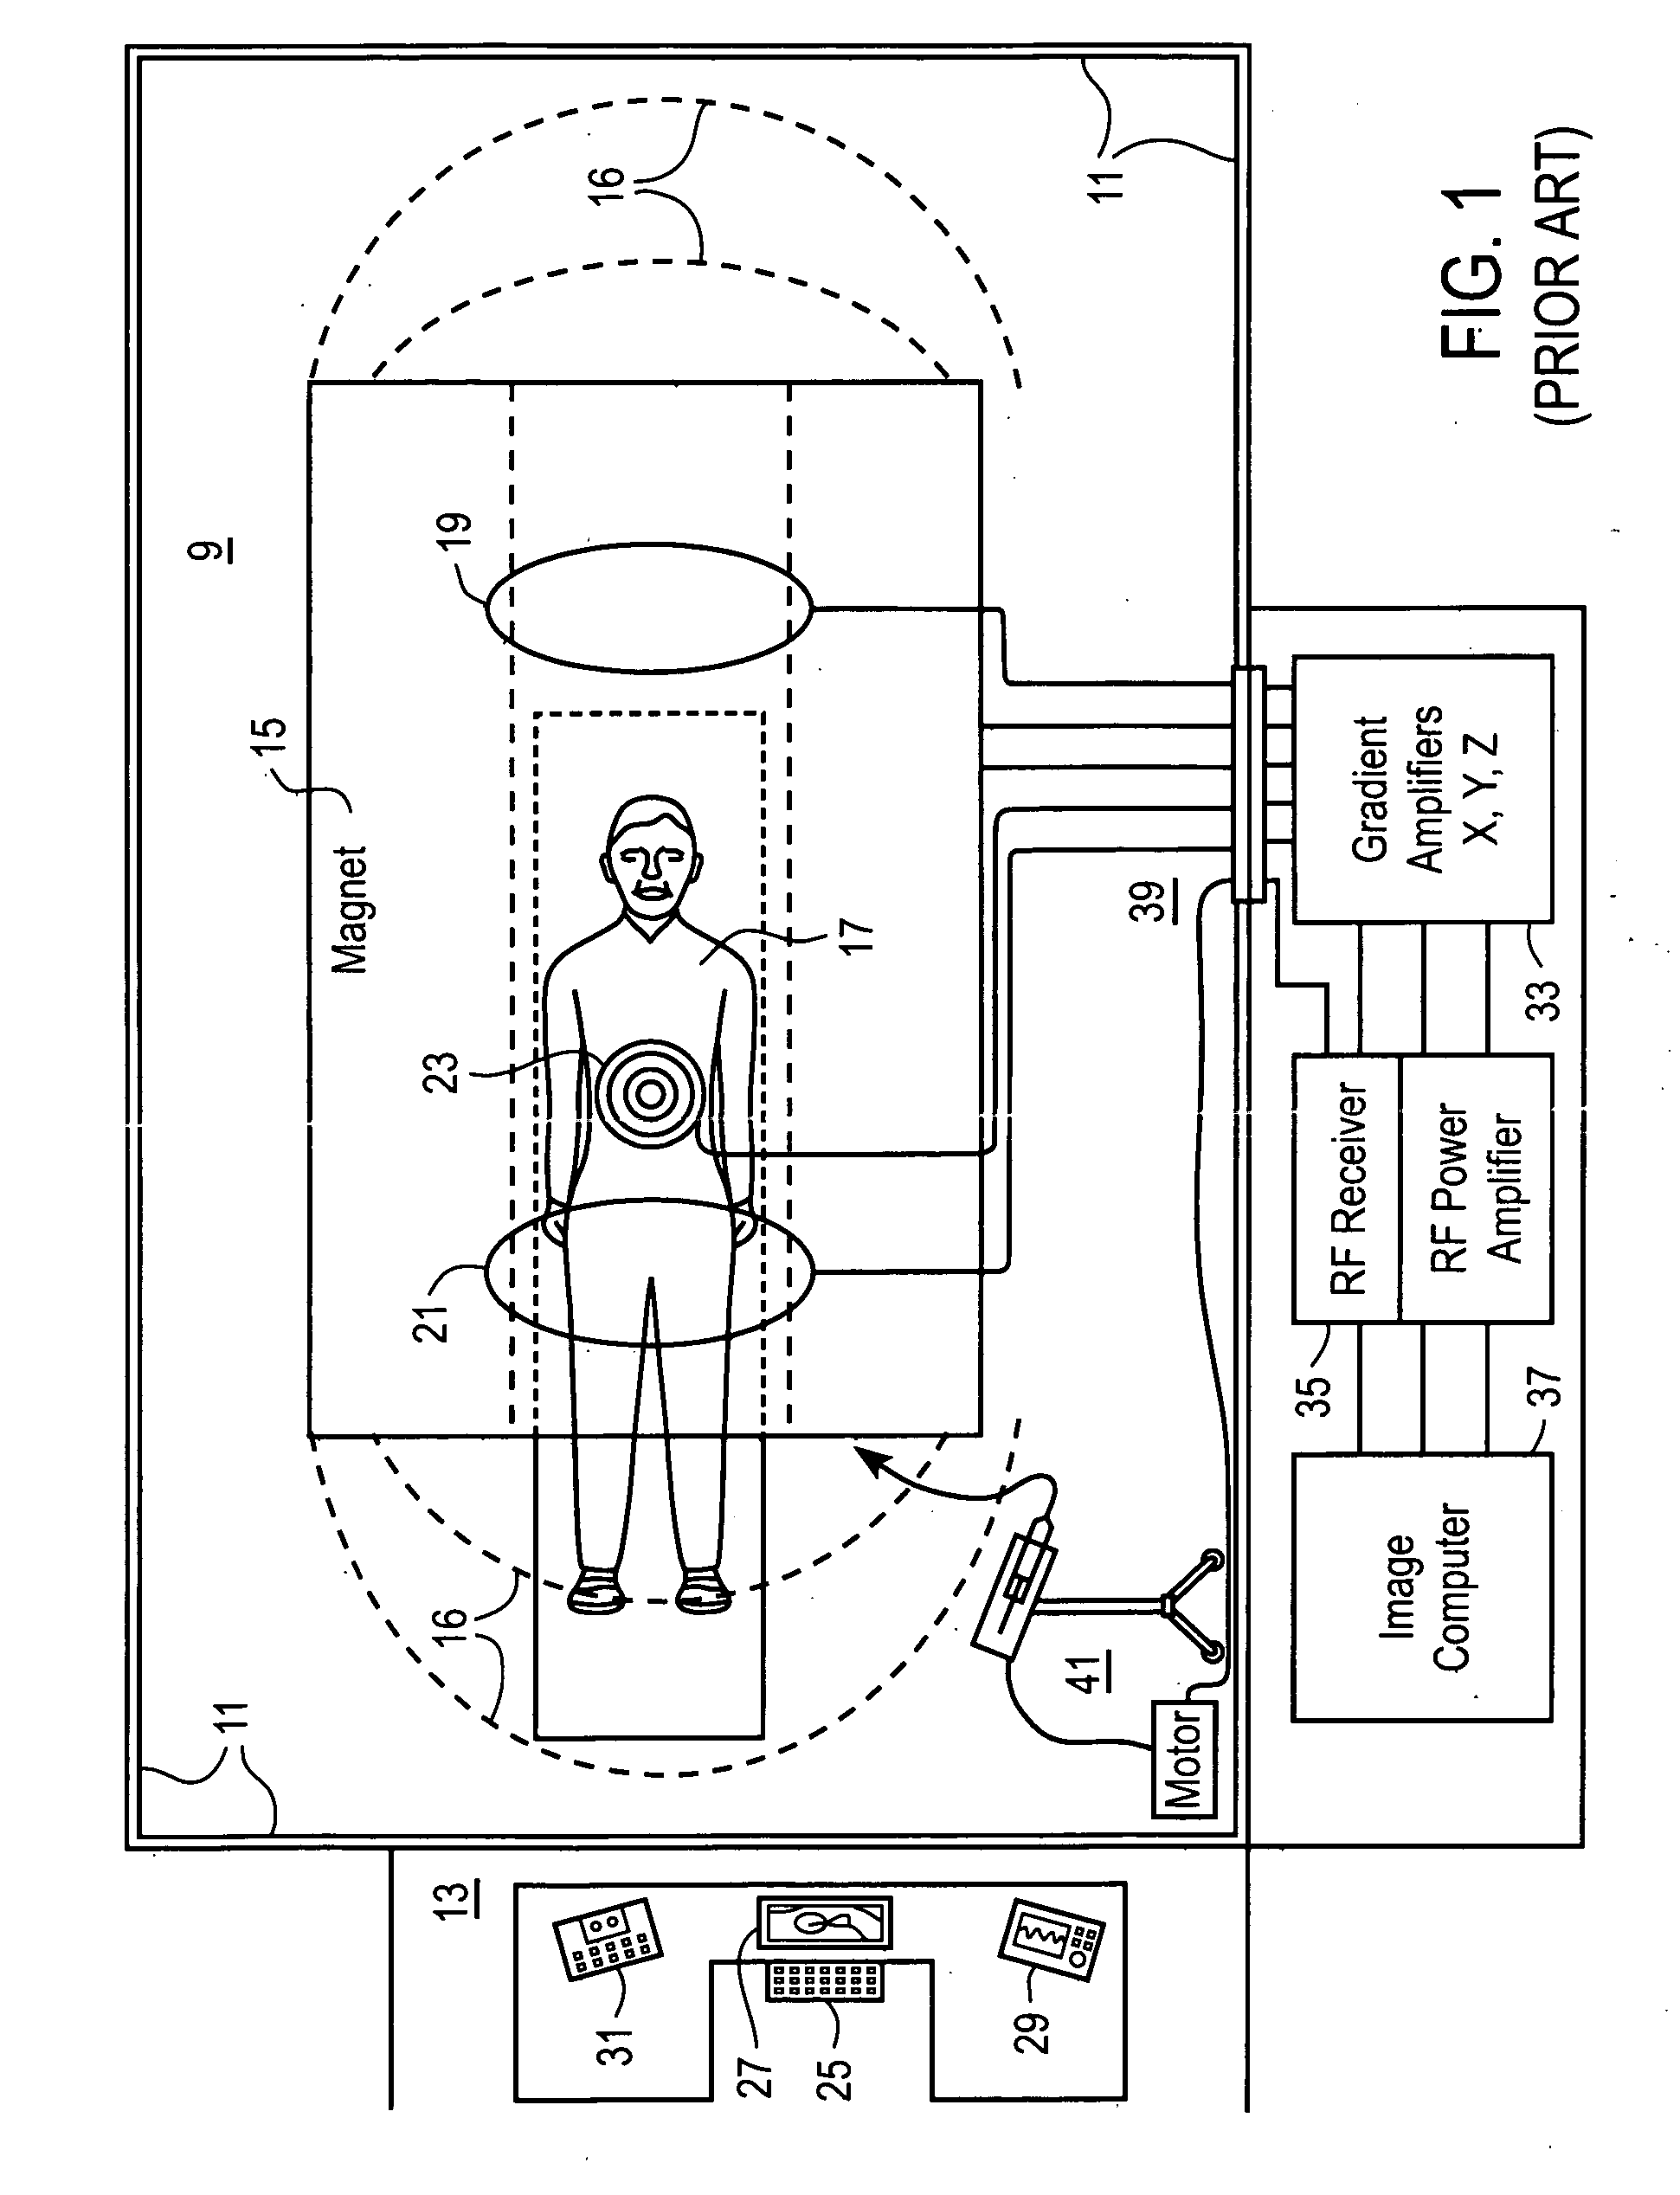 Liquid infusion apparatus